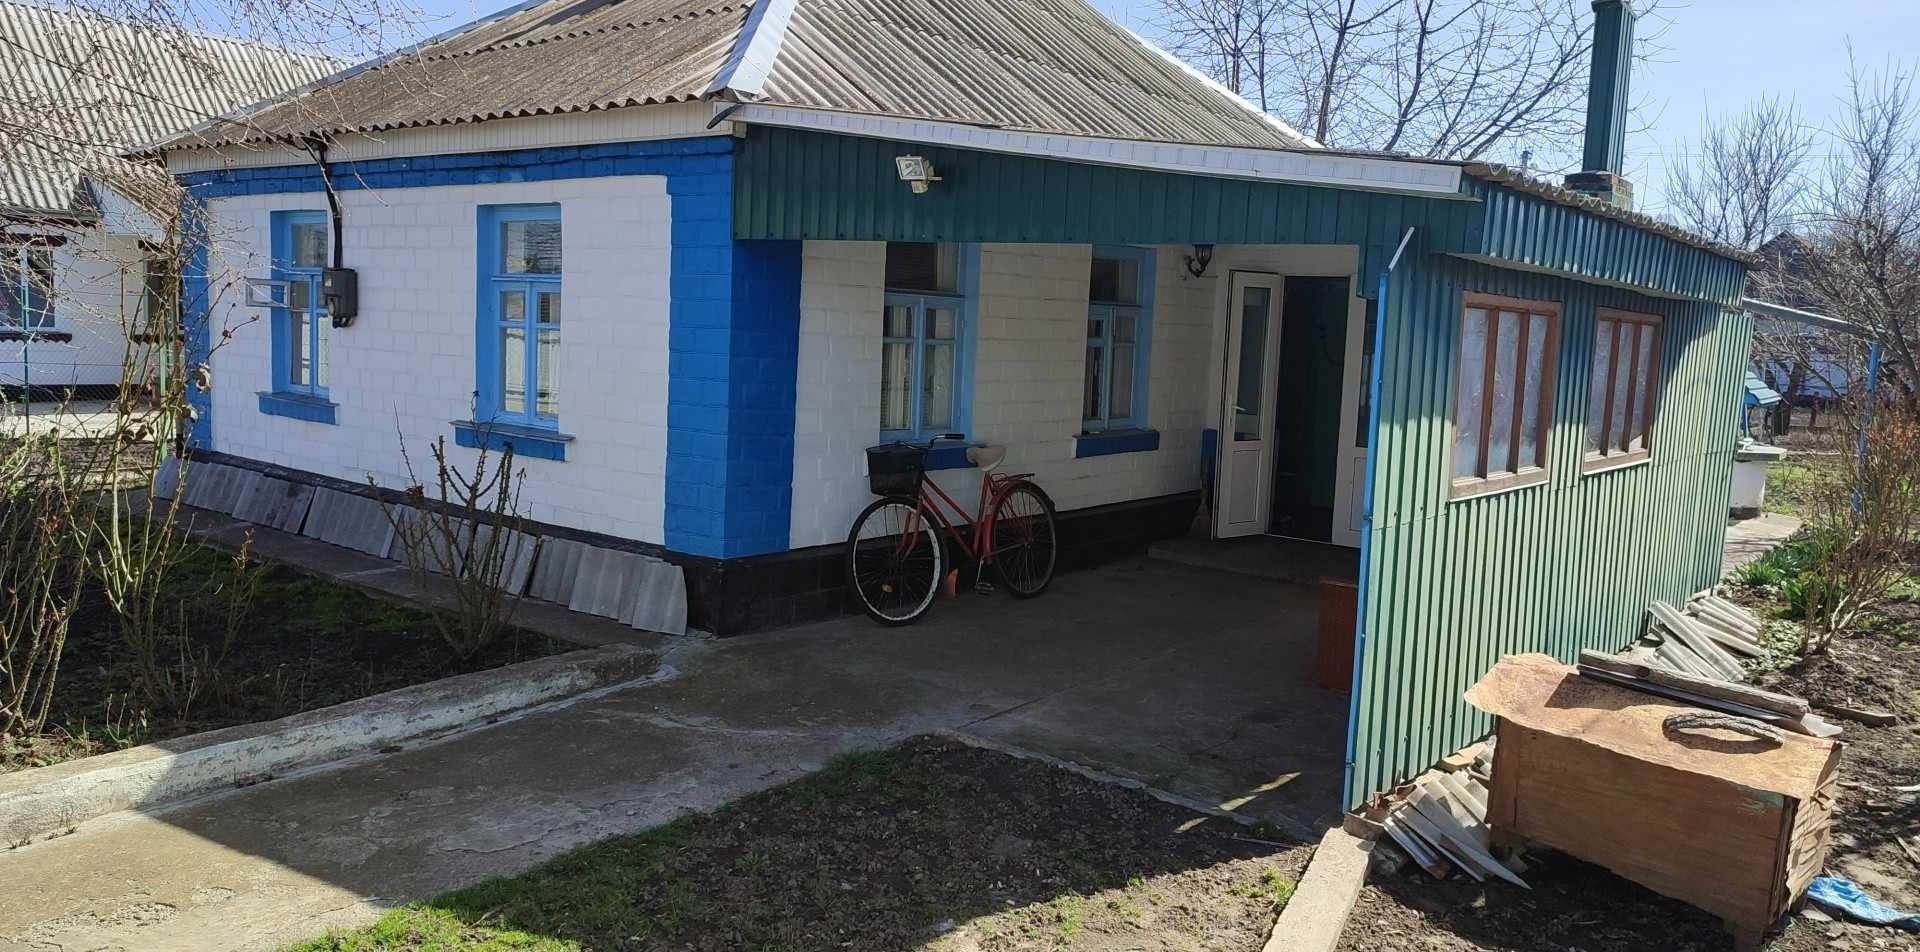 Продам будинок в м. Шпола р-н залізничного вокзалу